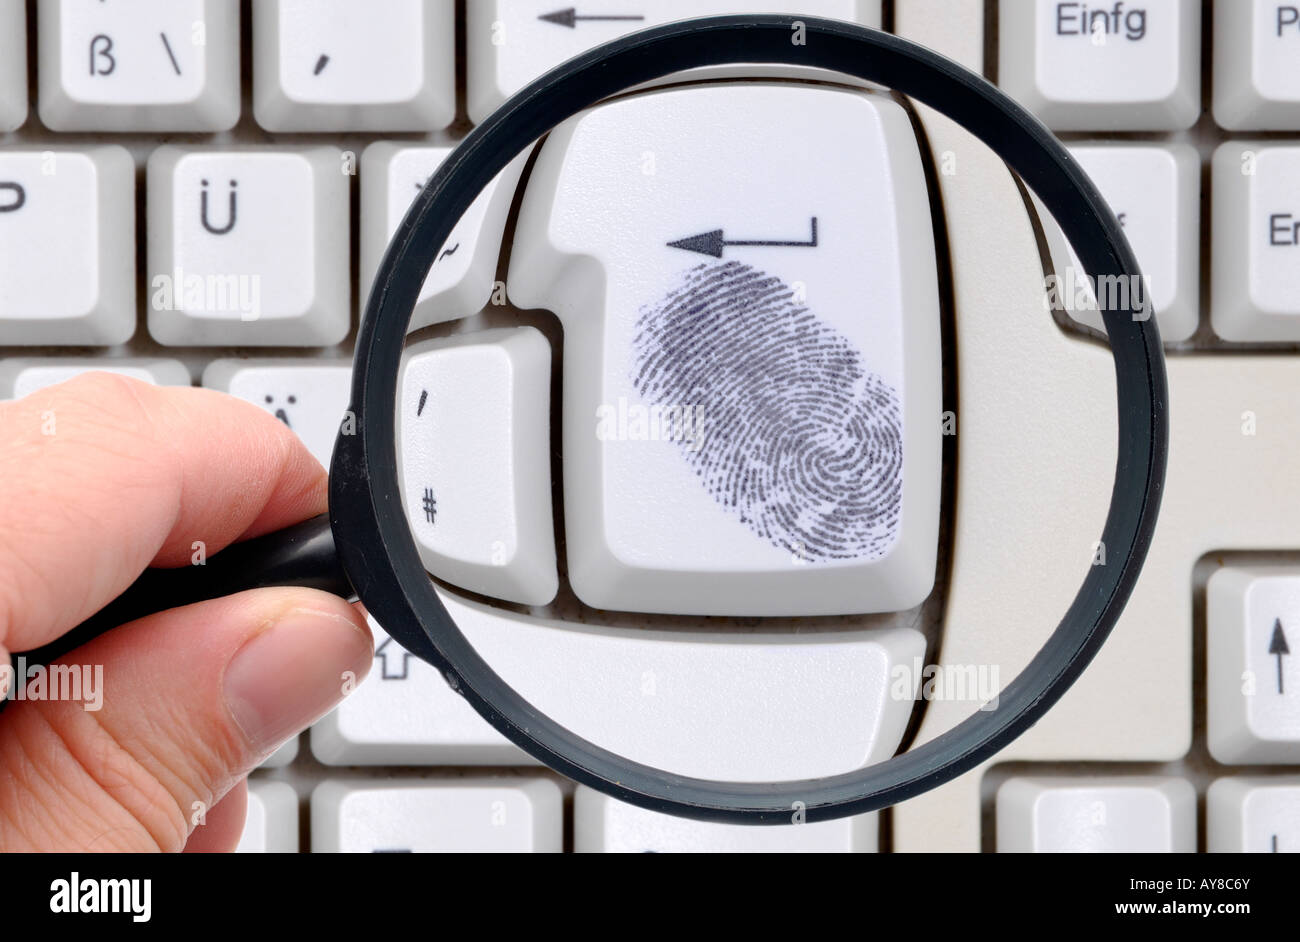 Online searching, fingerprint on keyboard Stock Photo